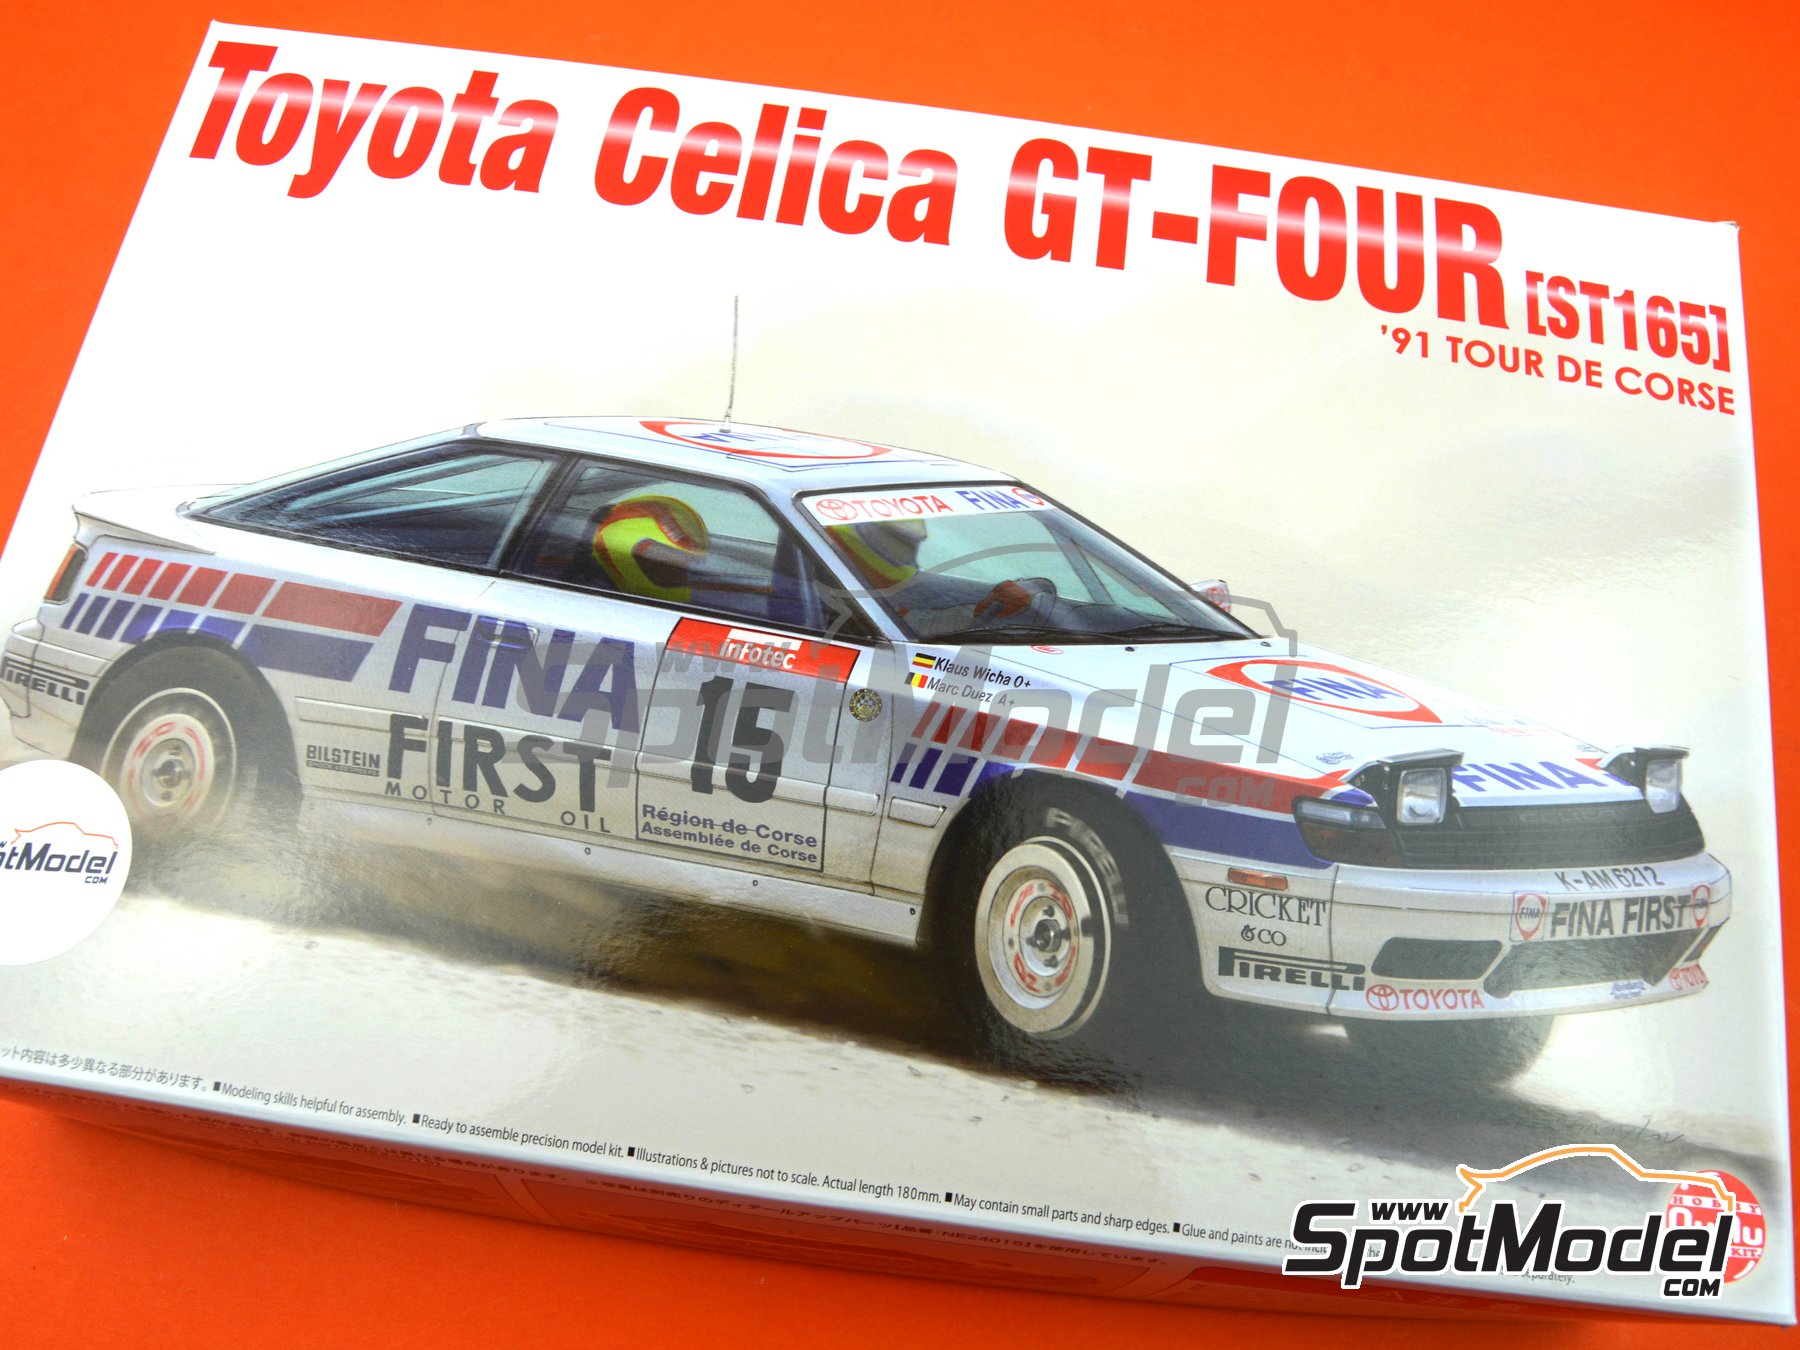 NuNu PN24015 1:24th scale Toyota Celica GT-FOUR ST165 Rally 1991 Tour de Corse